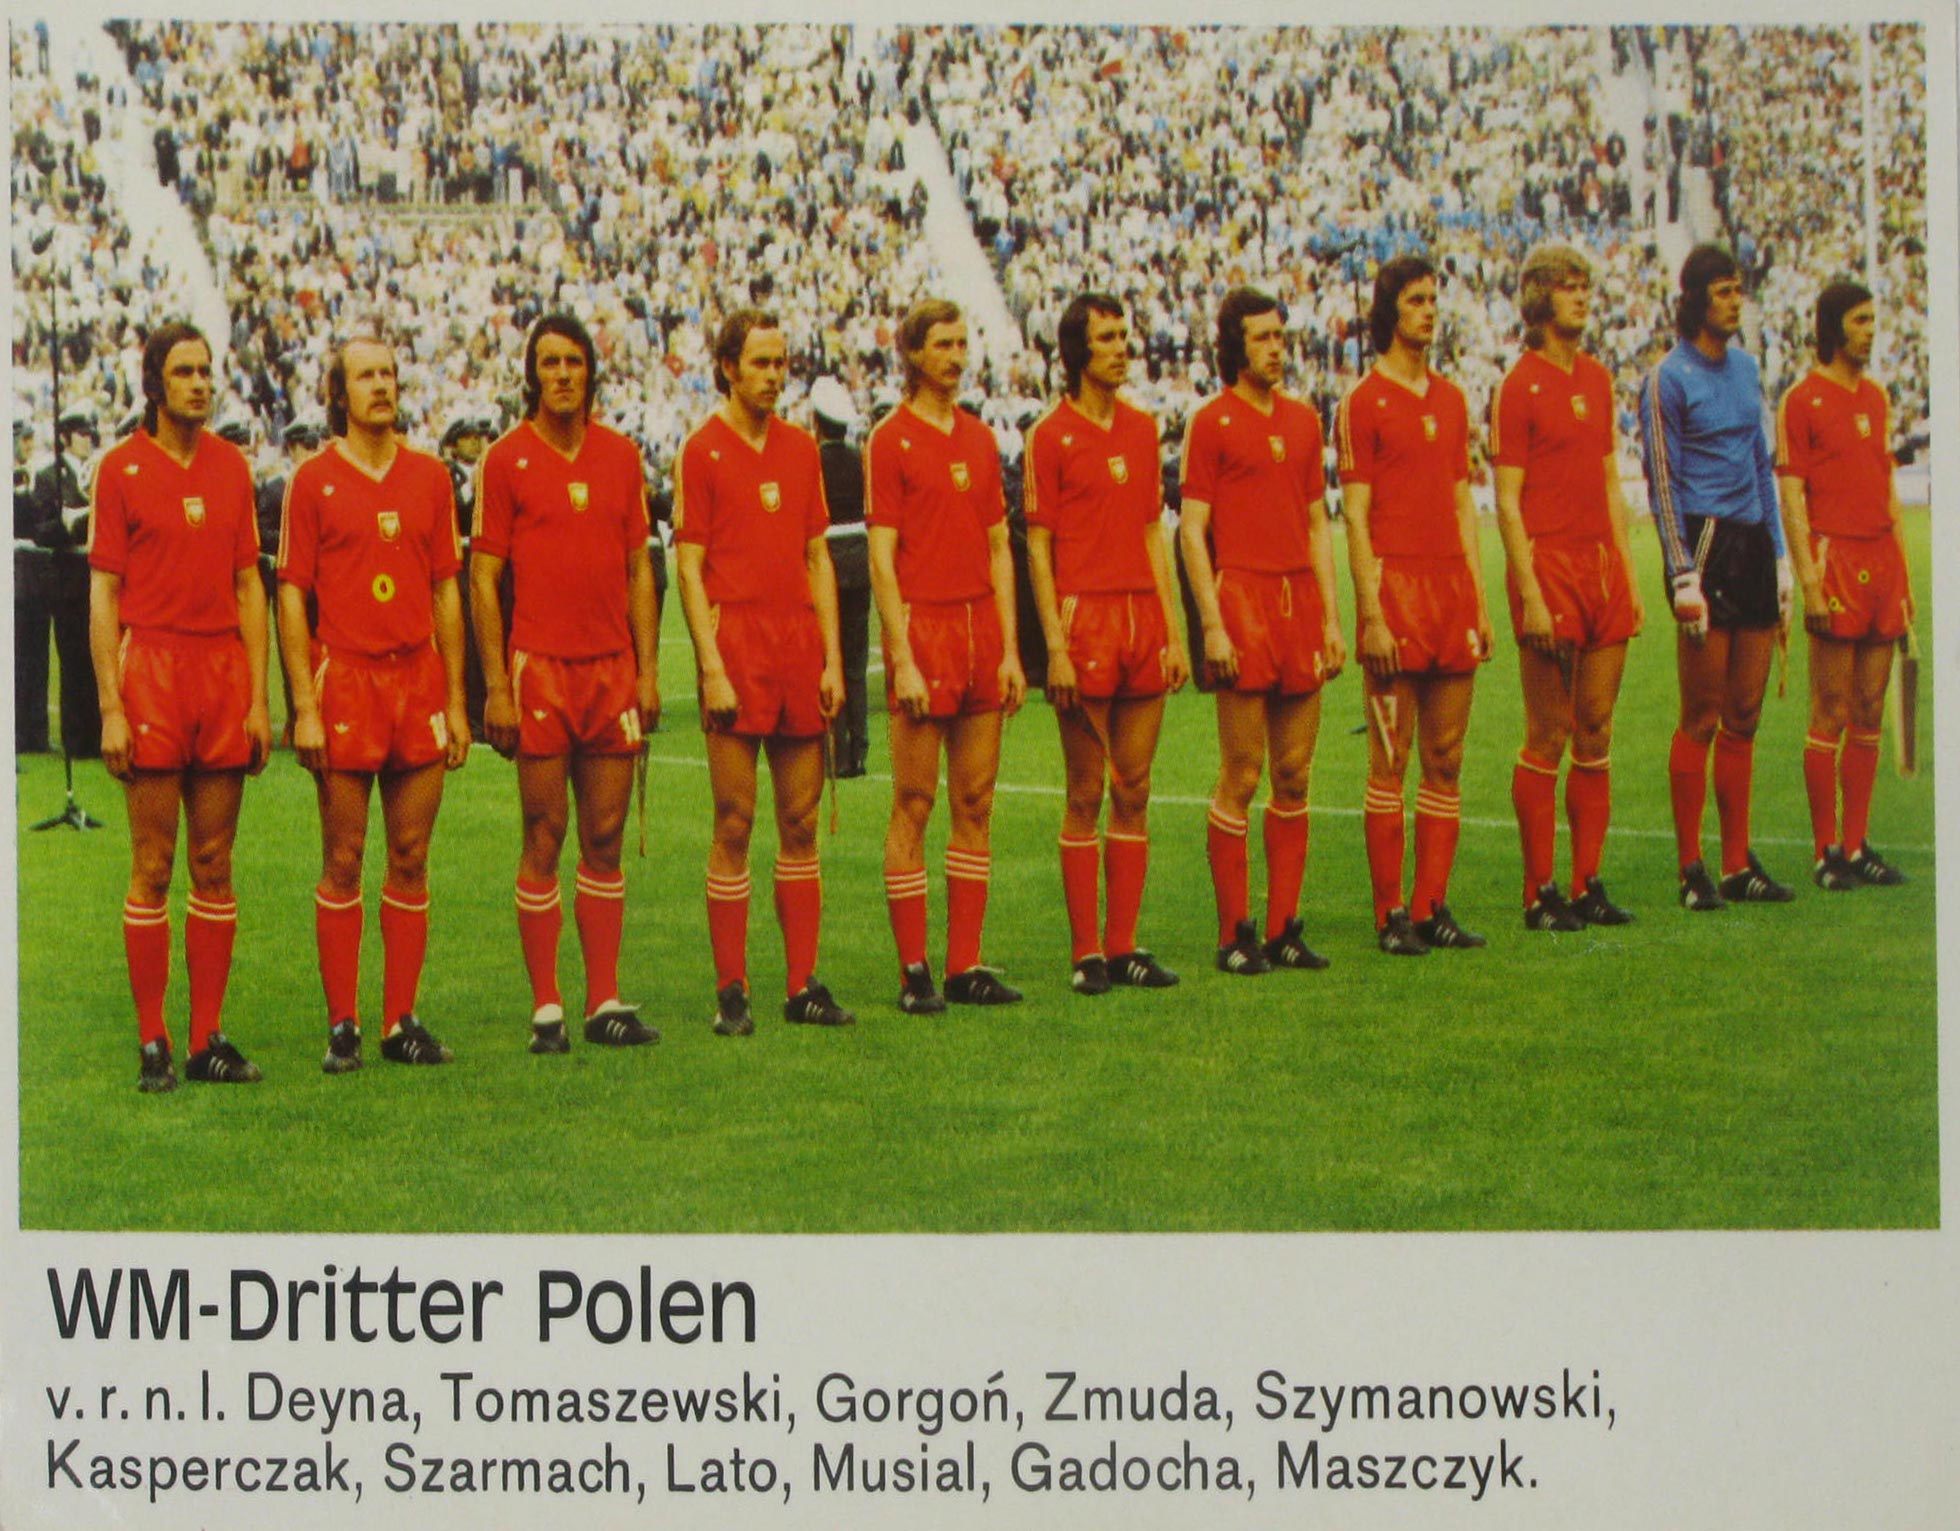   WM-Dritter Polen (WM-Siegerbild III) 